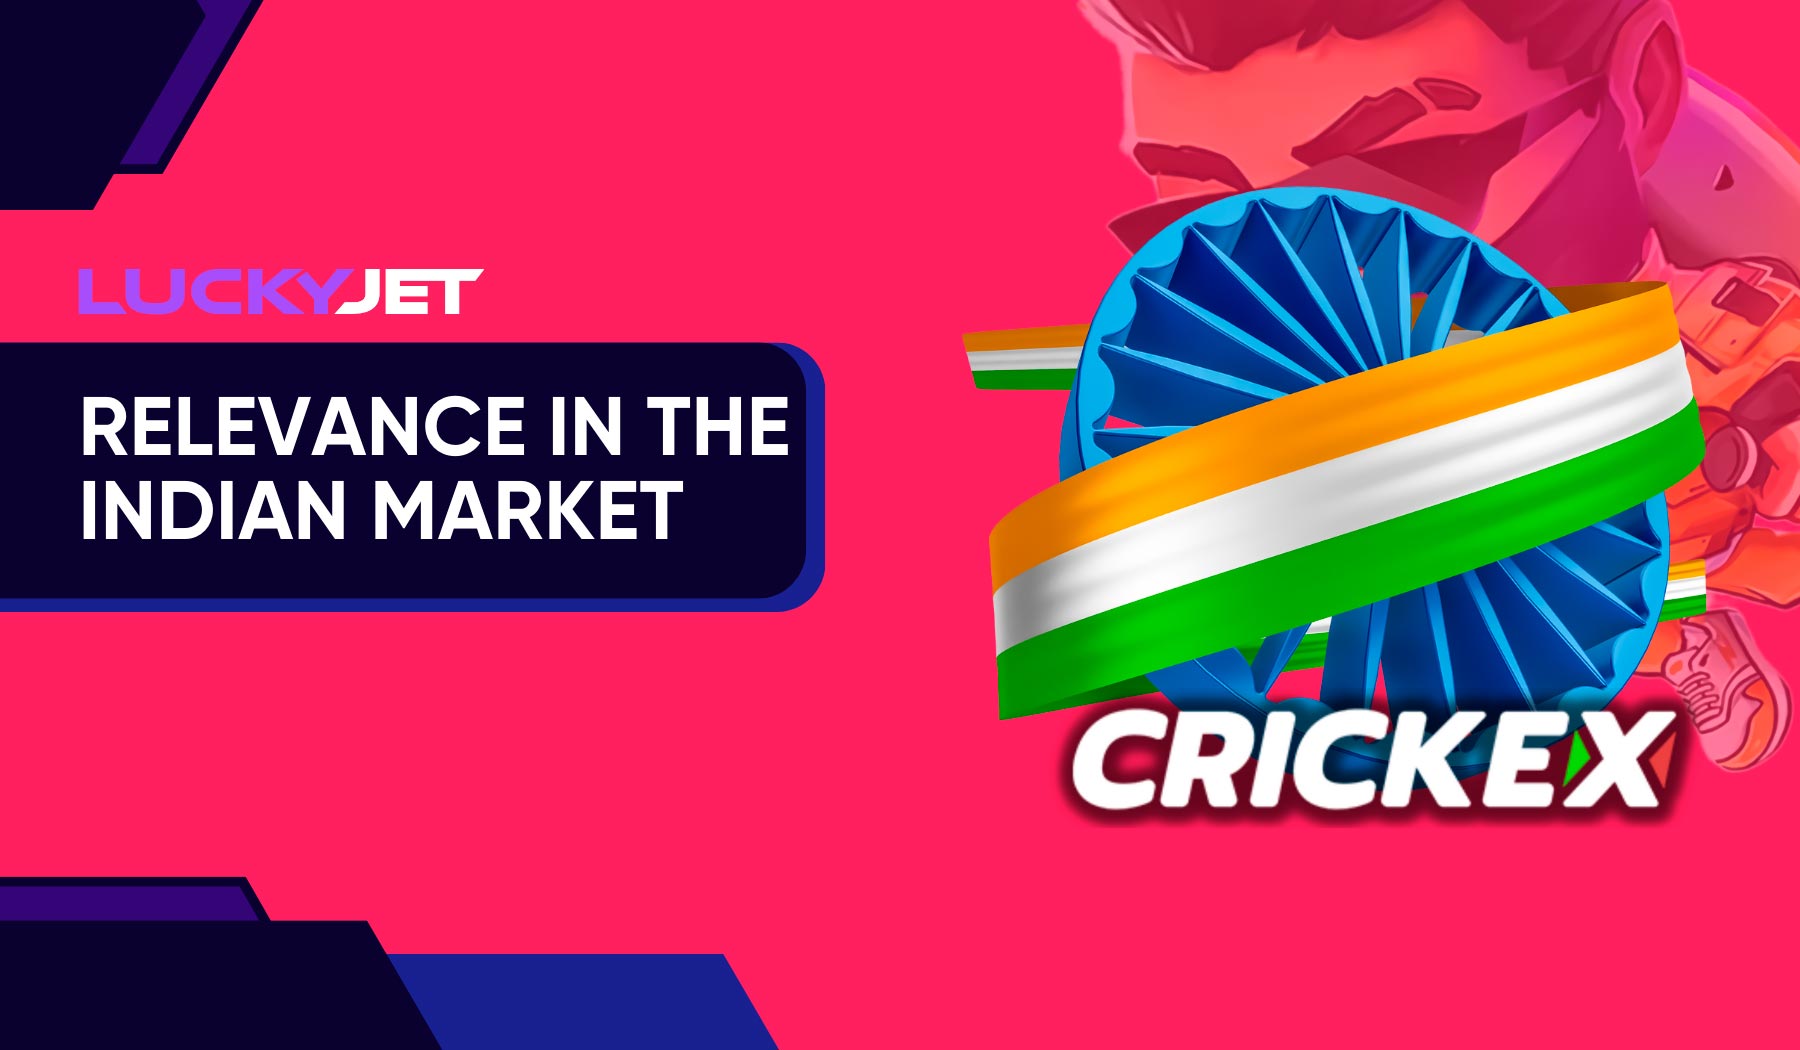 Crickex Jet Parimatch in the Indian market